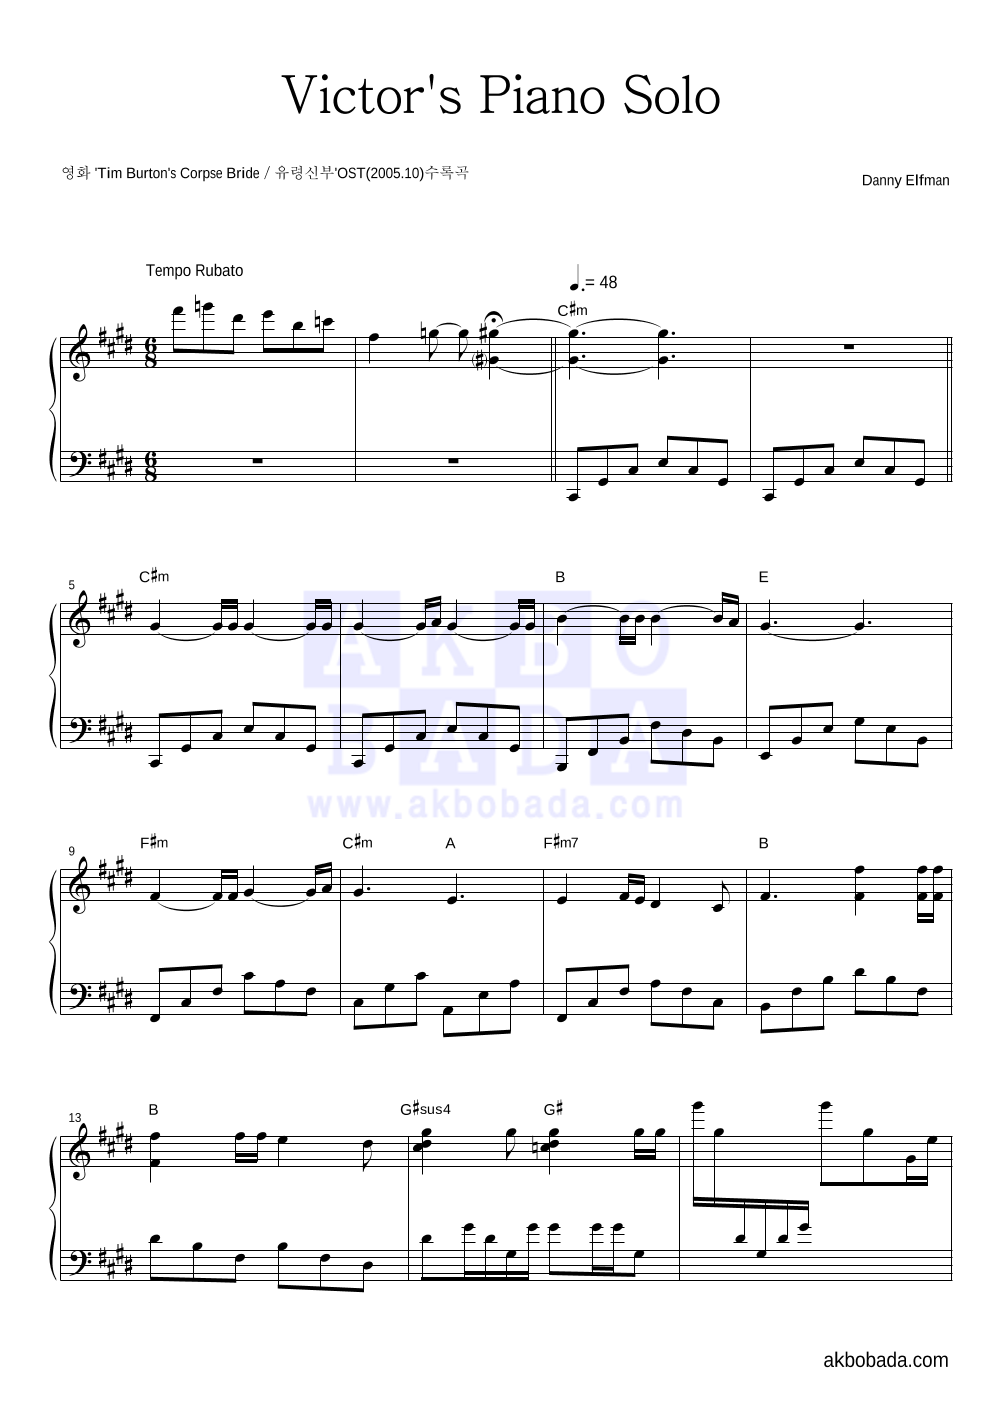 Danny Elfman - Victor's Piano Solo 피아노 2단 악보 